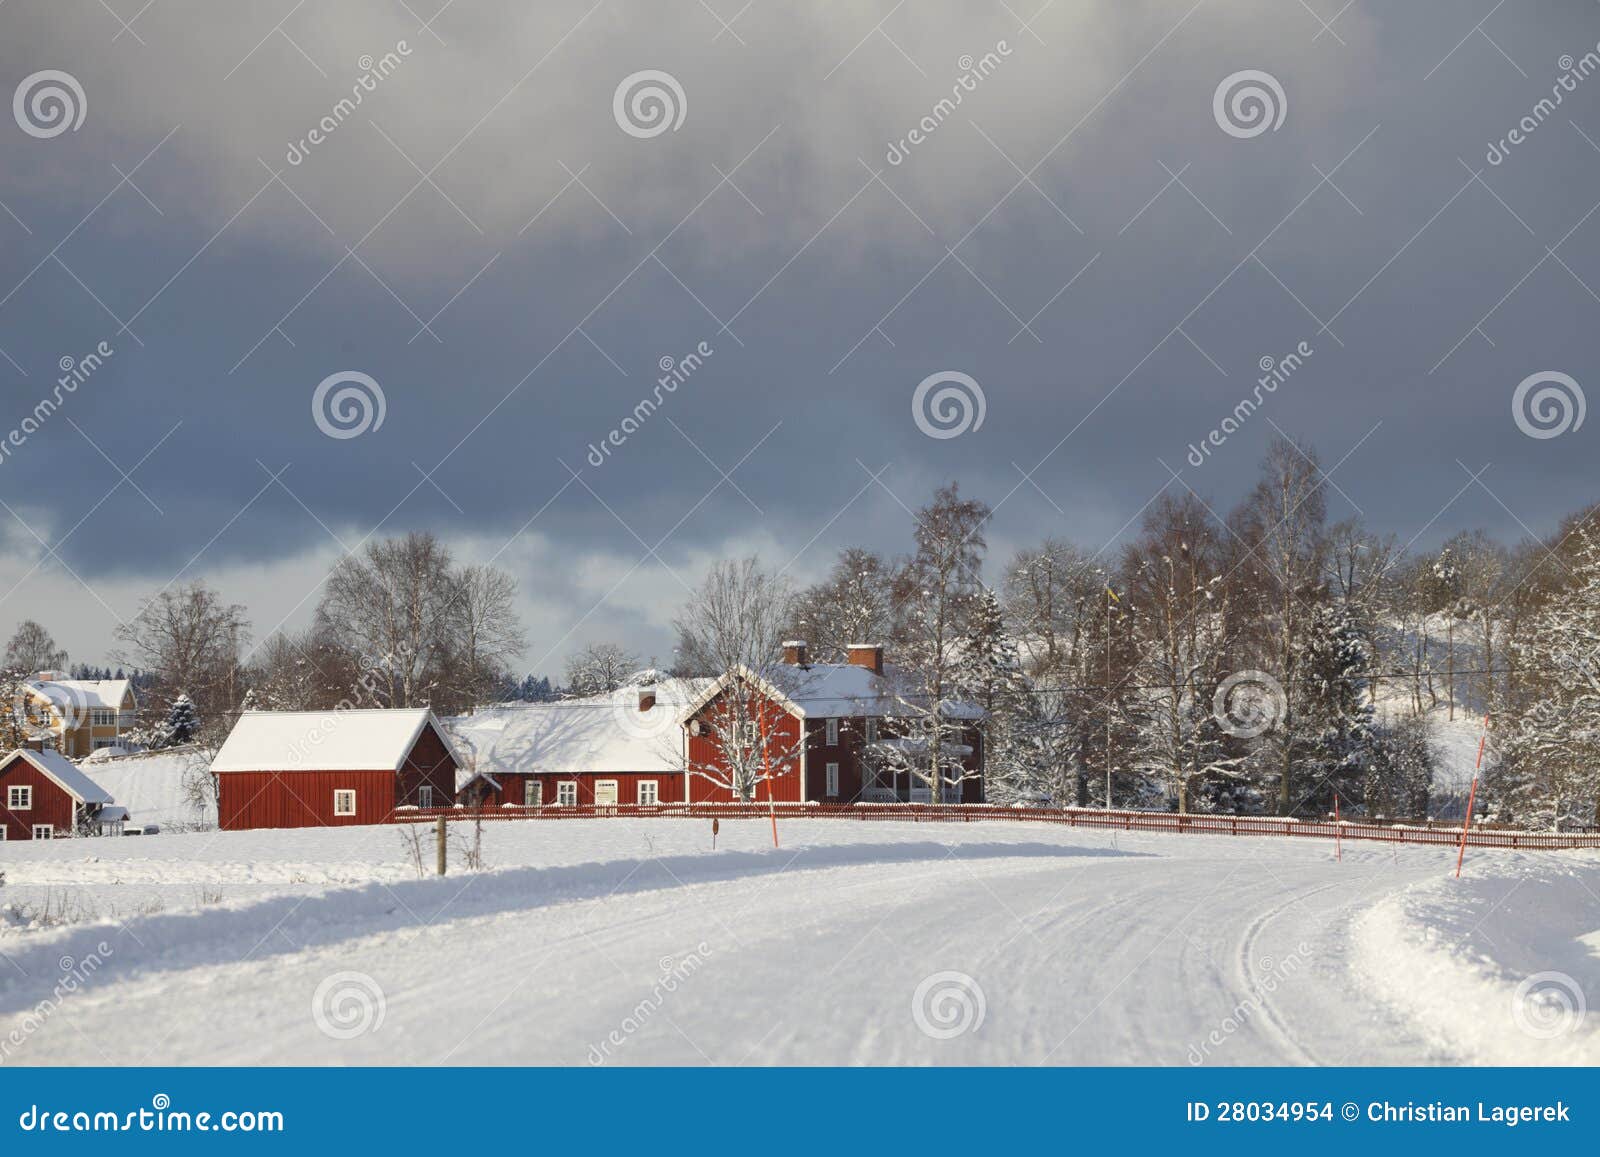 冬天横向的老农厂房子. 一处多雪的冬天风景的老红色农厂房子，在展望期的黑暗的云彩。 smaland。 瑞典